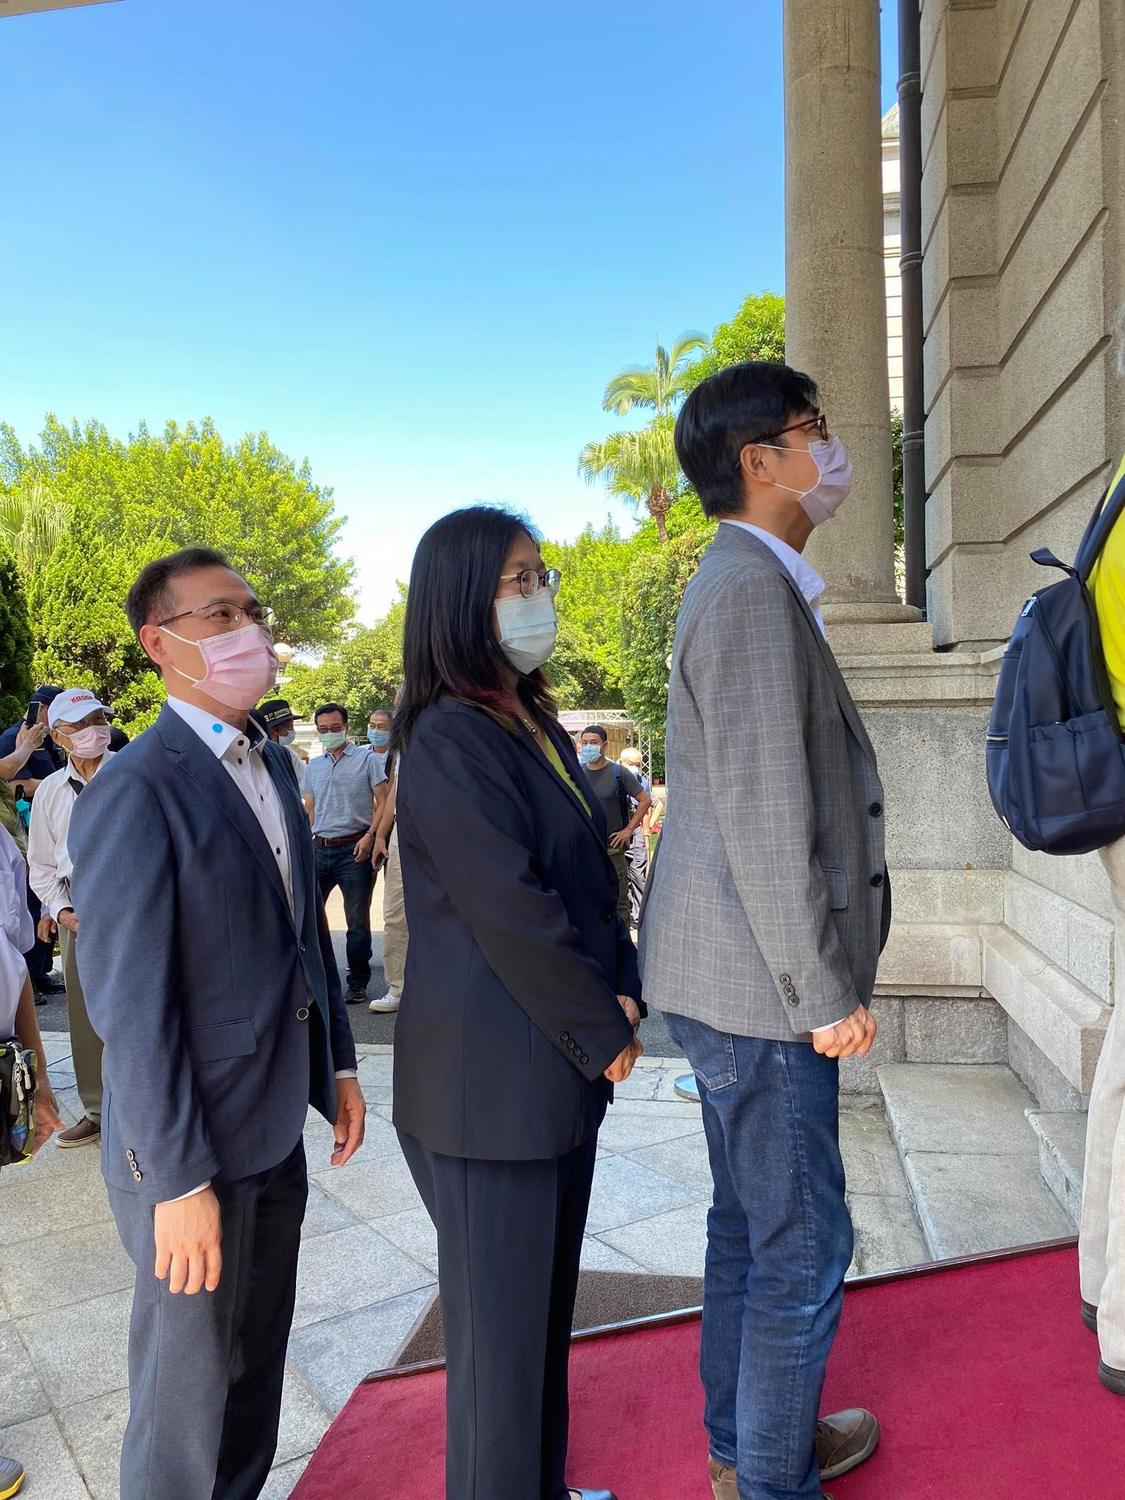 陳其邁赴台北賓館悼念李登輝 「我們用生命守護民主」